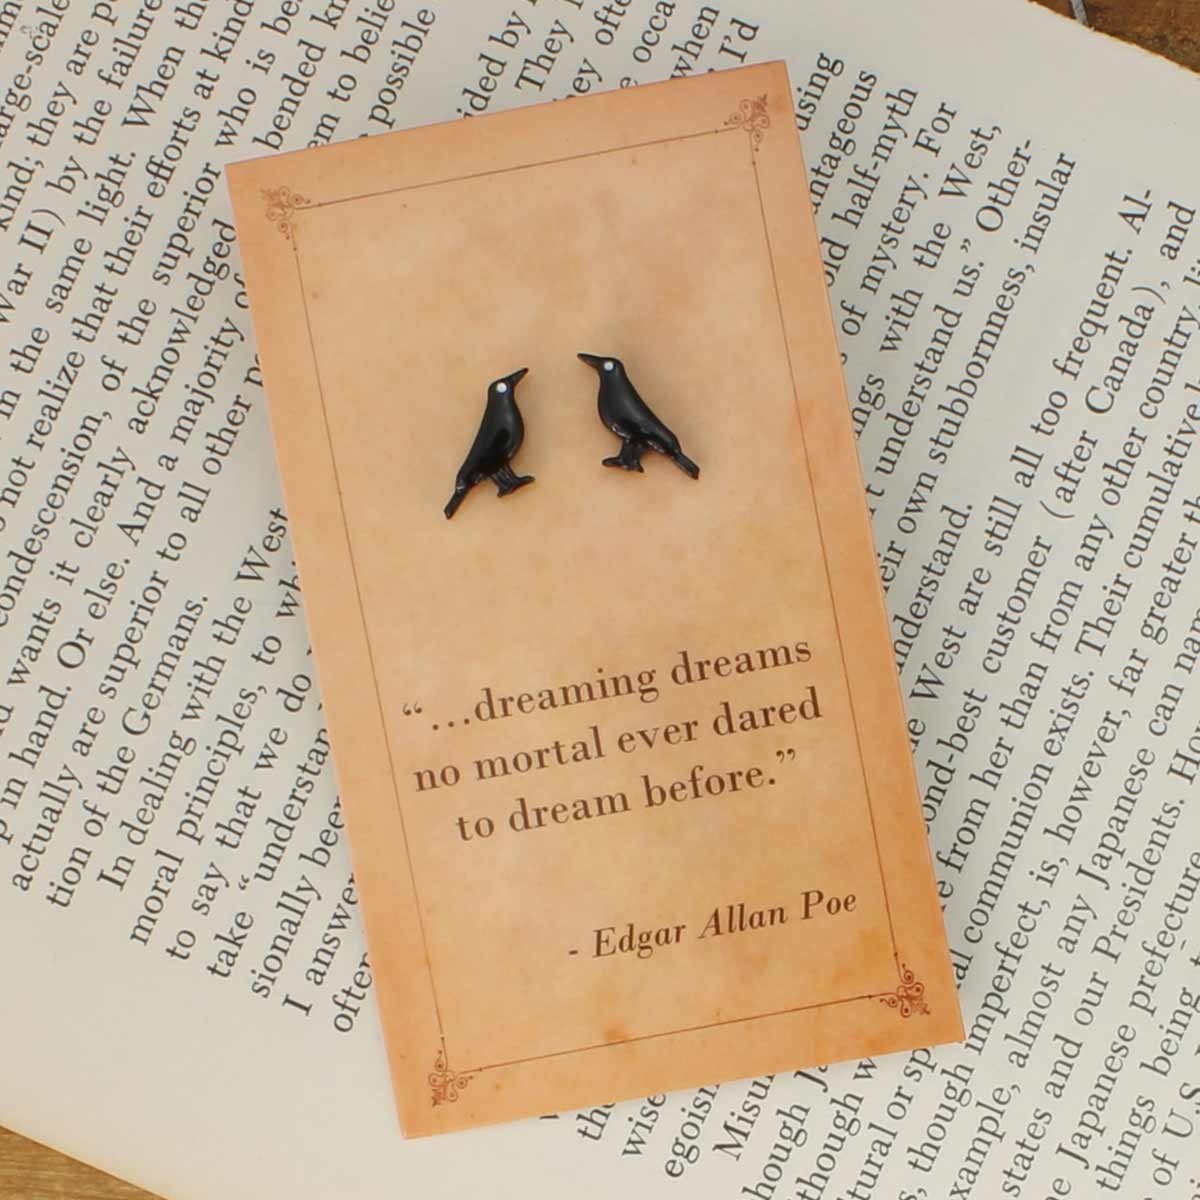 edgar allan poe quotes the raven